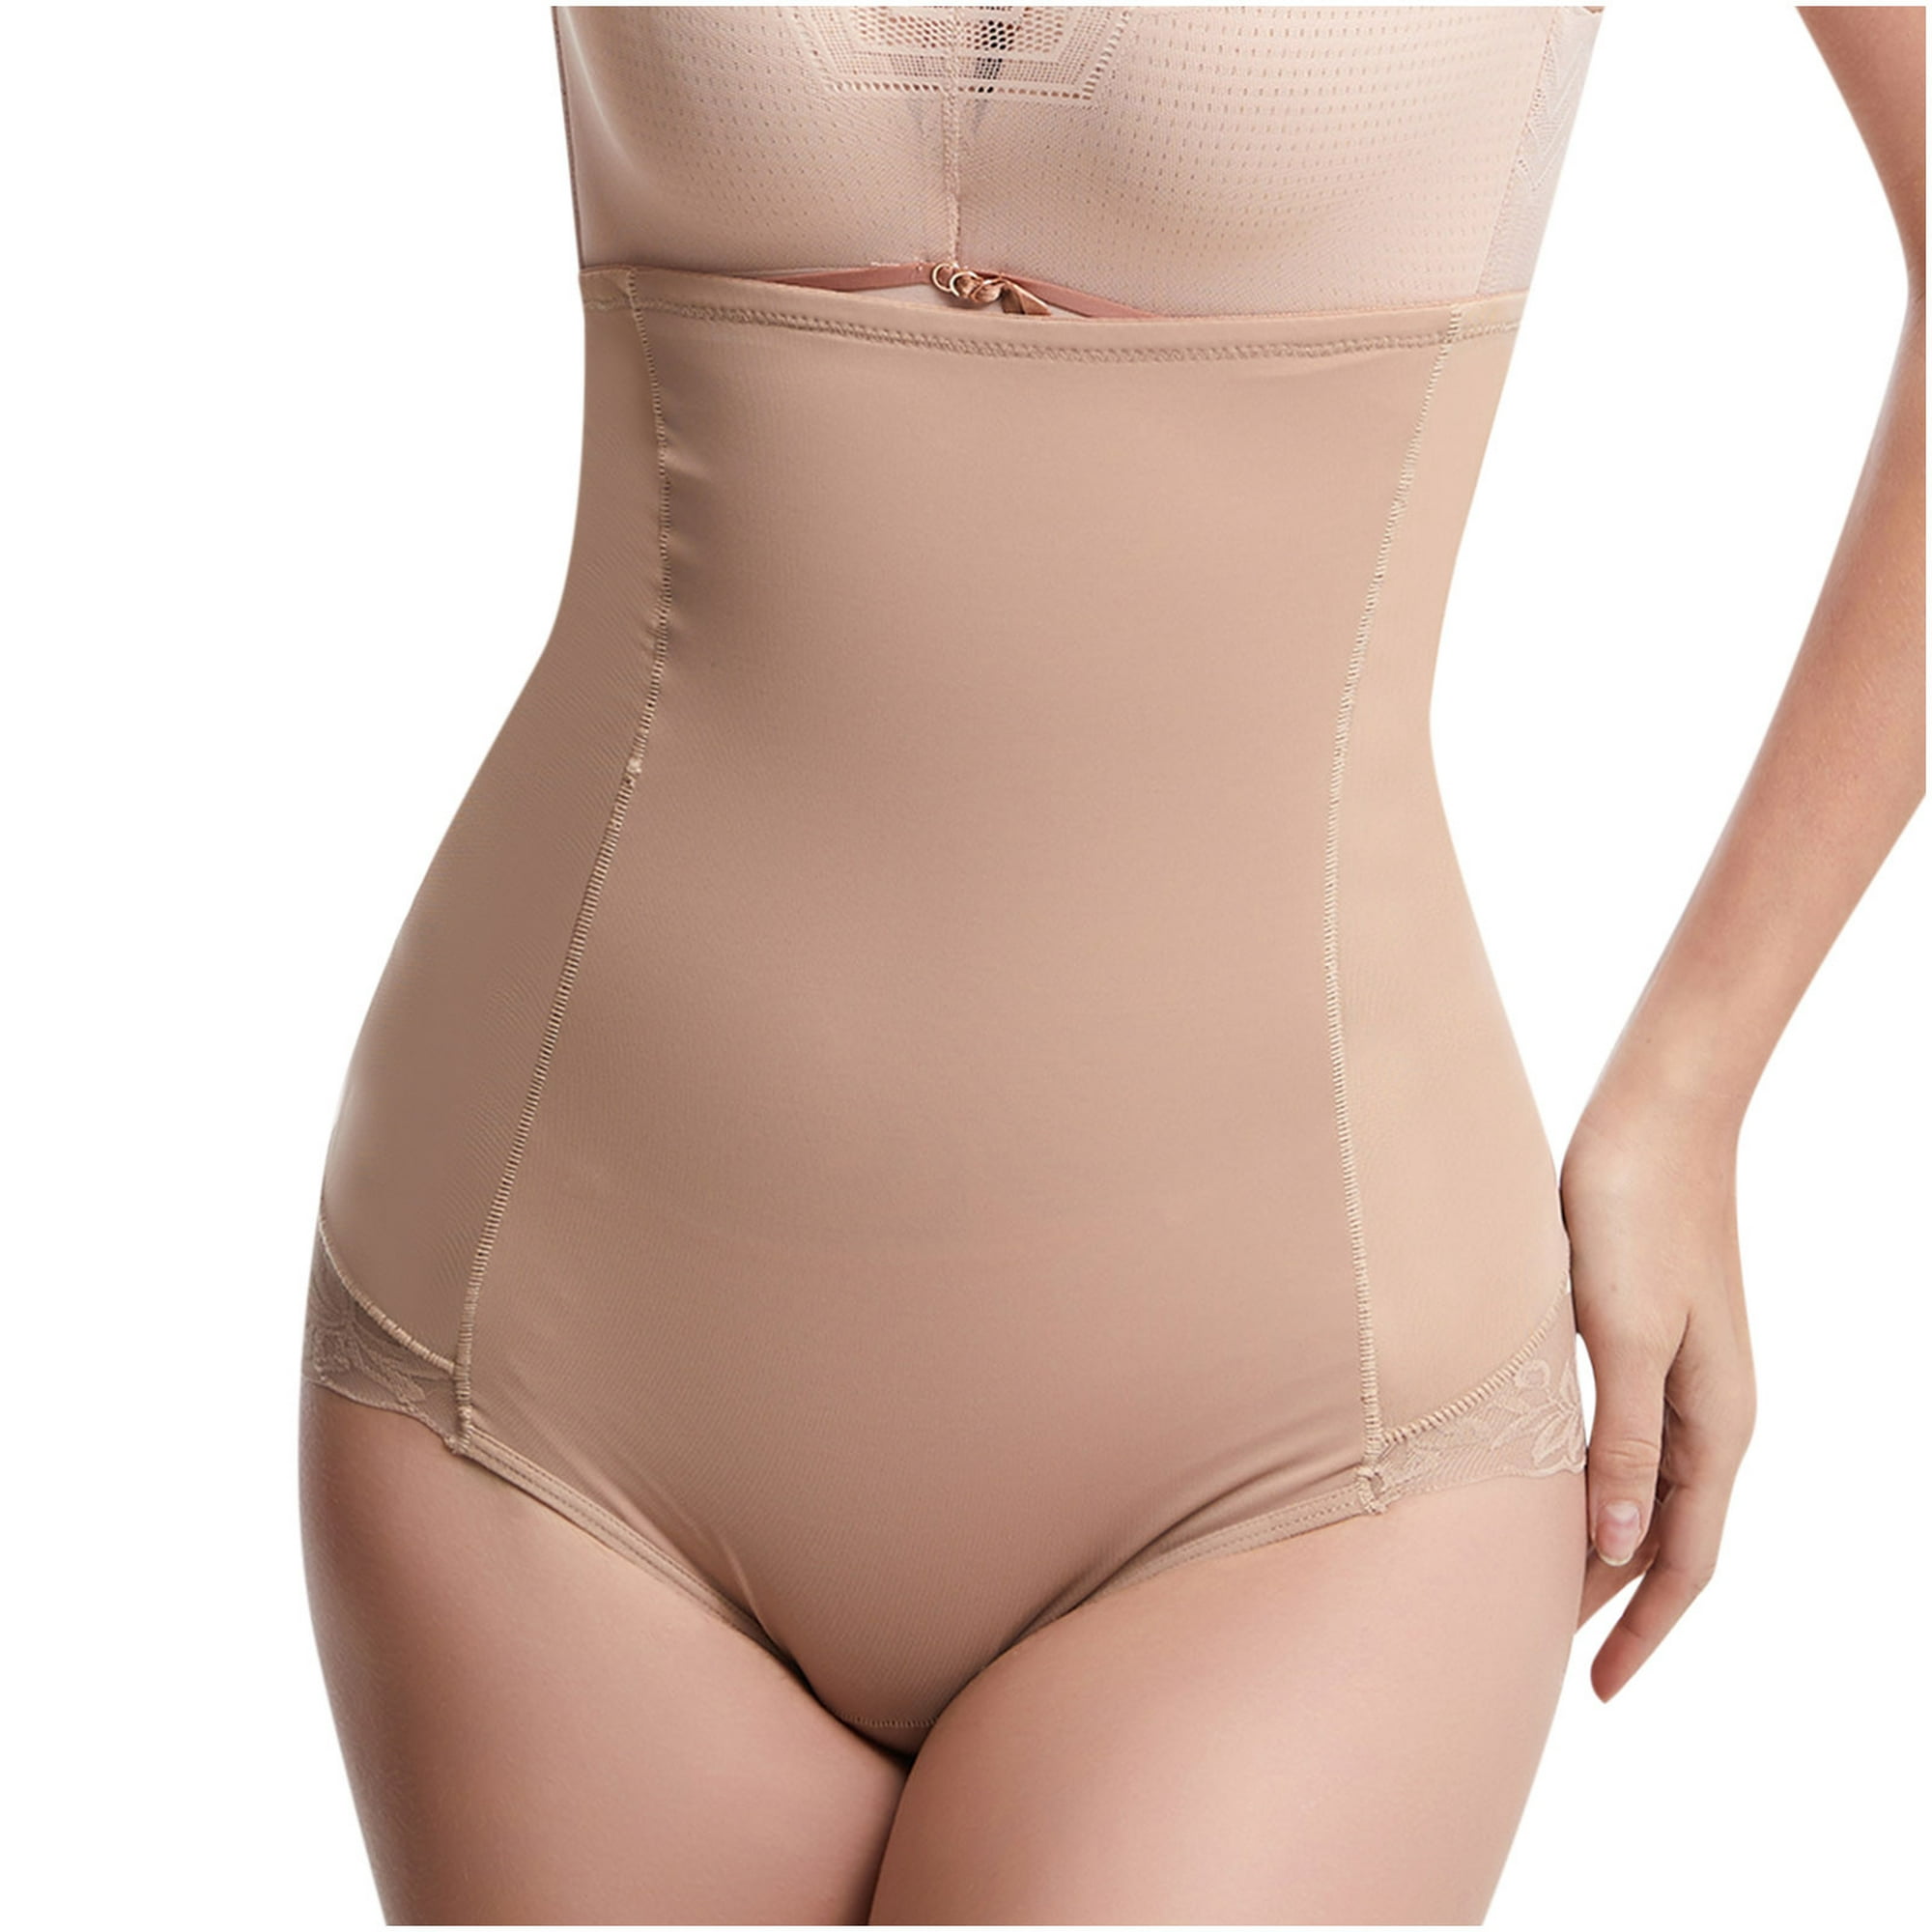 Pantalones para esculpir el cuerpo Pantalones de abdomen de cintura media  para mujer Leggings de cintura alta Pantalones de encaje Bragas Fridja  nalpqowj46185